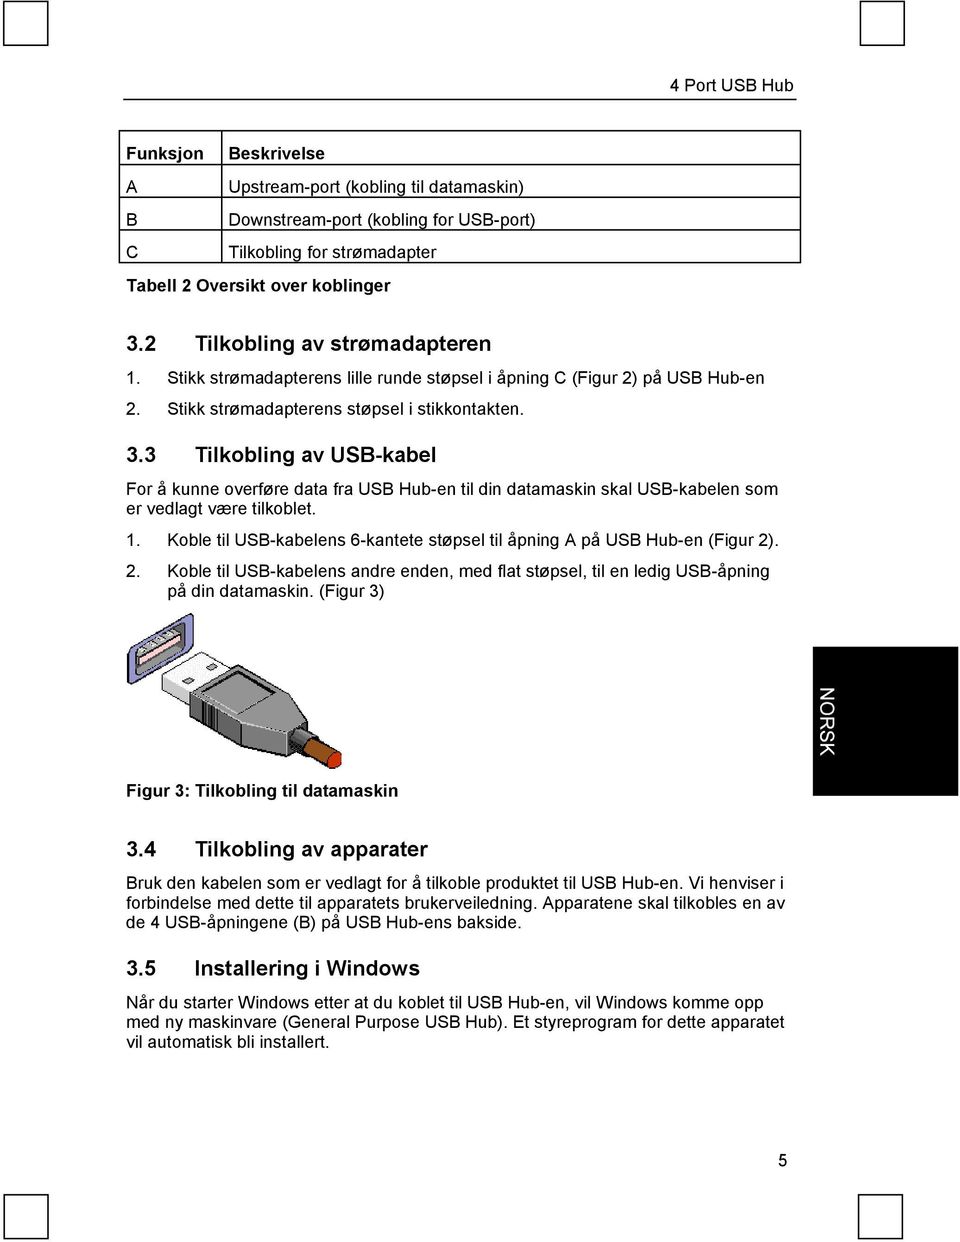 3 Tilkobling av USB-kabel For å kunne overføre data fra USB Hub-en til din datamaskin skal USB-kabelen som er vedlagt være tilkoblet. 1.